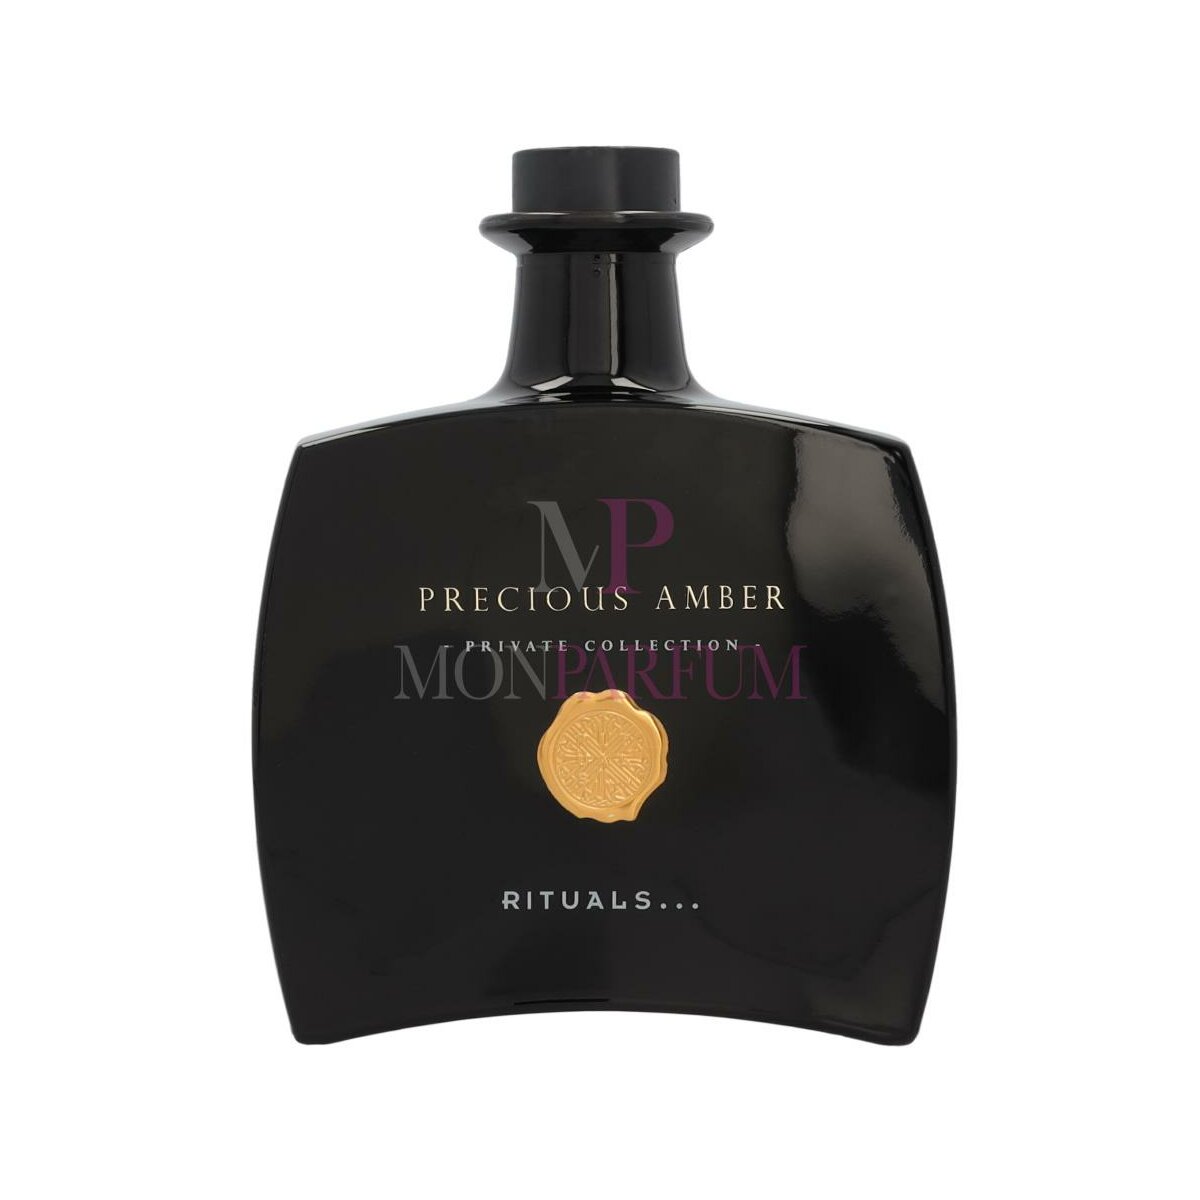 Rituals Private Collection Precious Amber Fragrance Sticks 450ml, 48,00 €